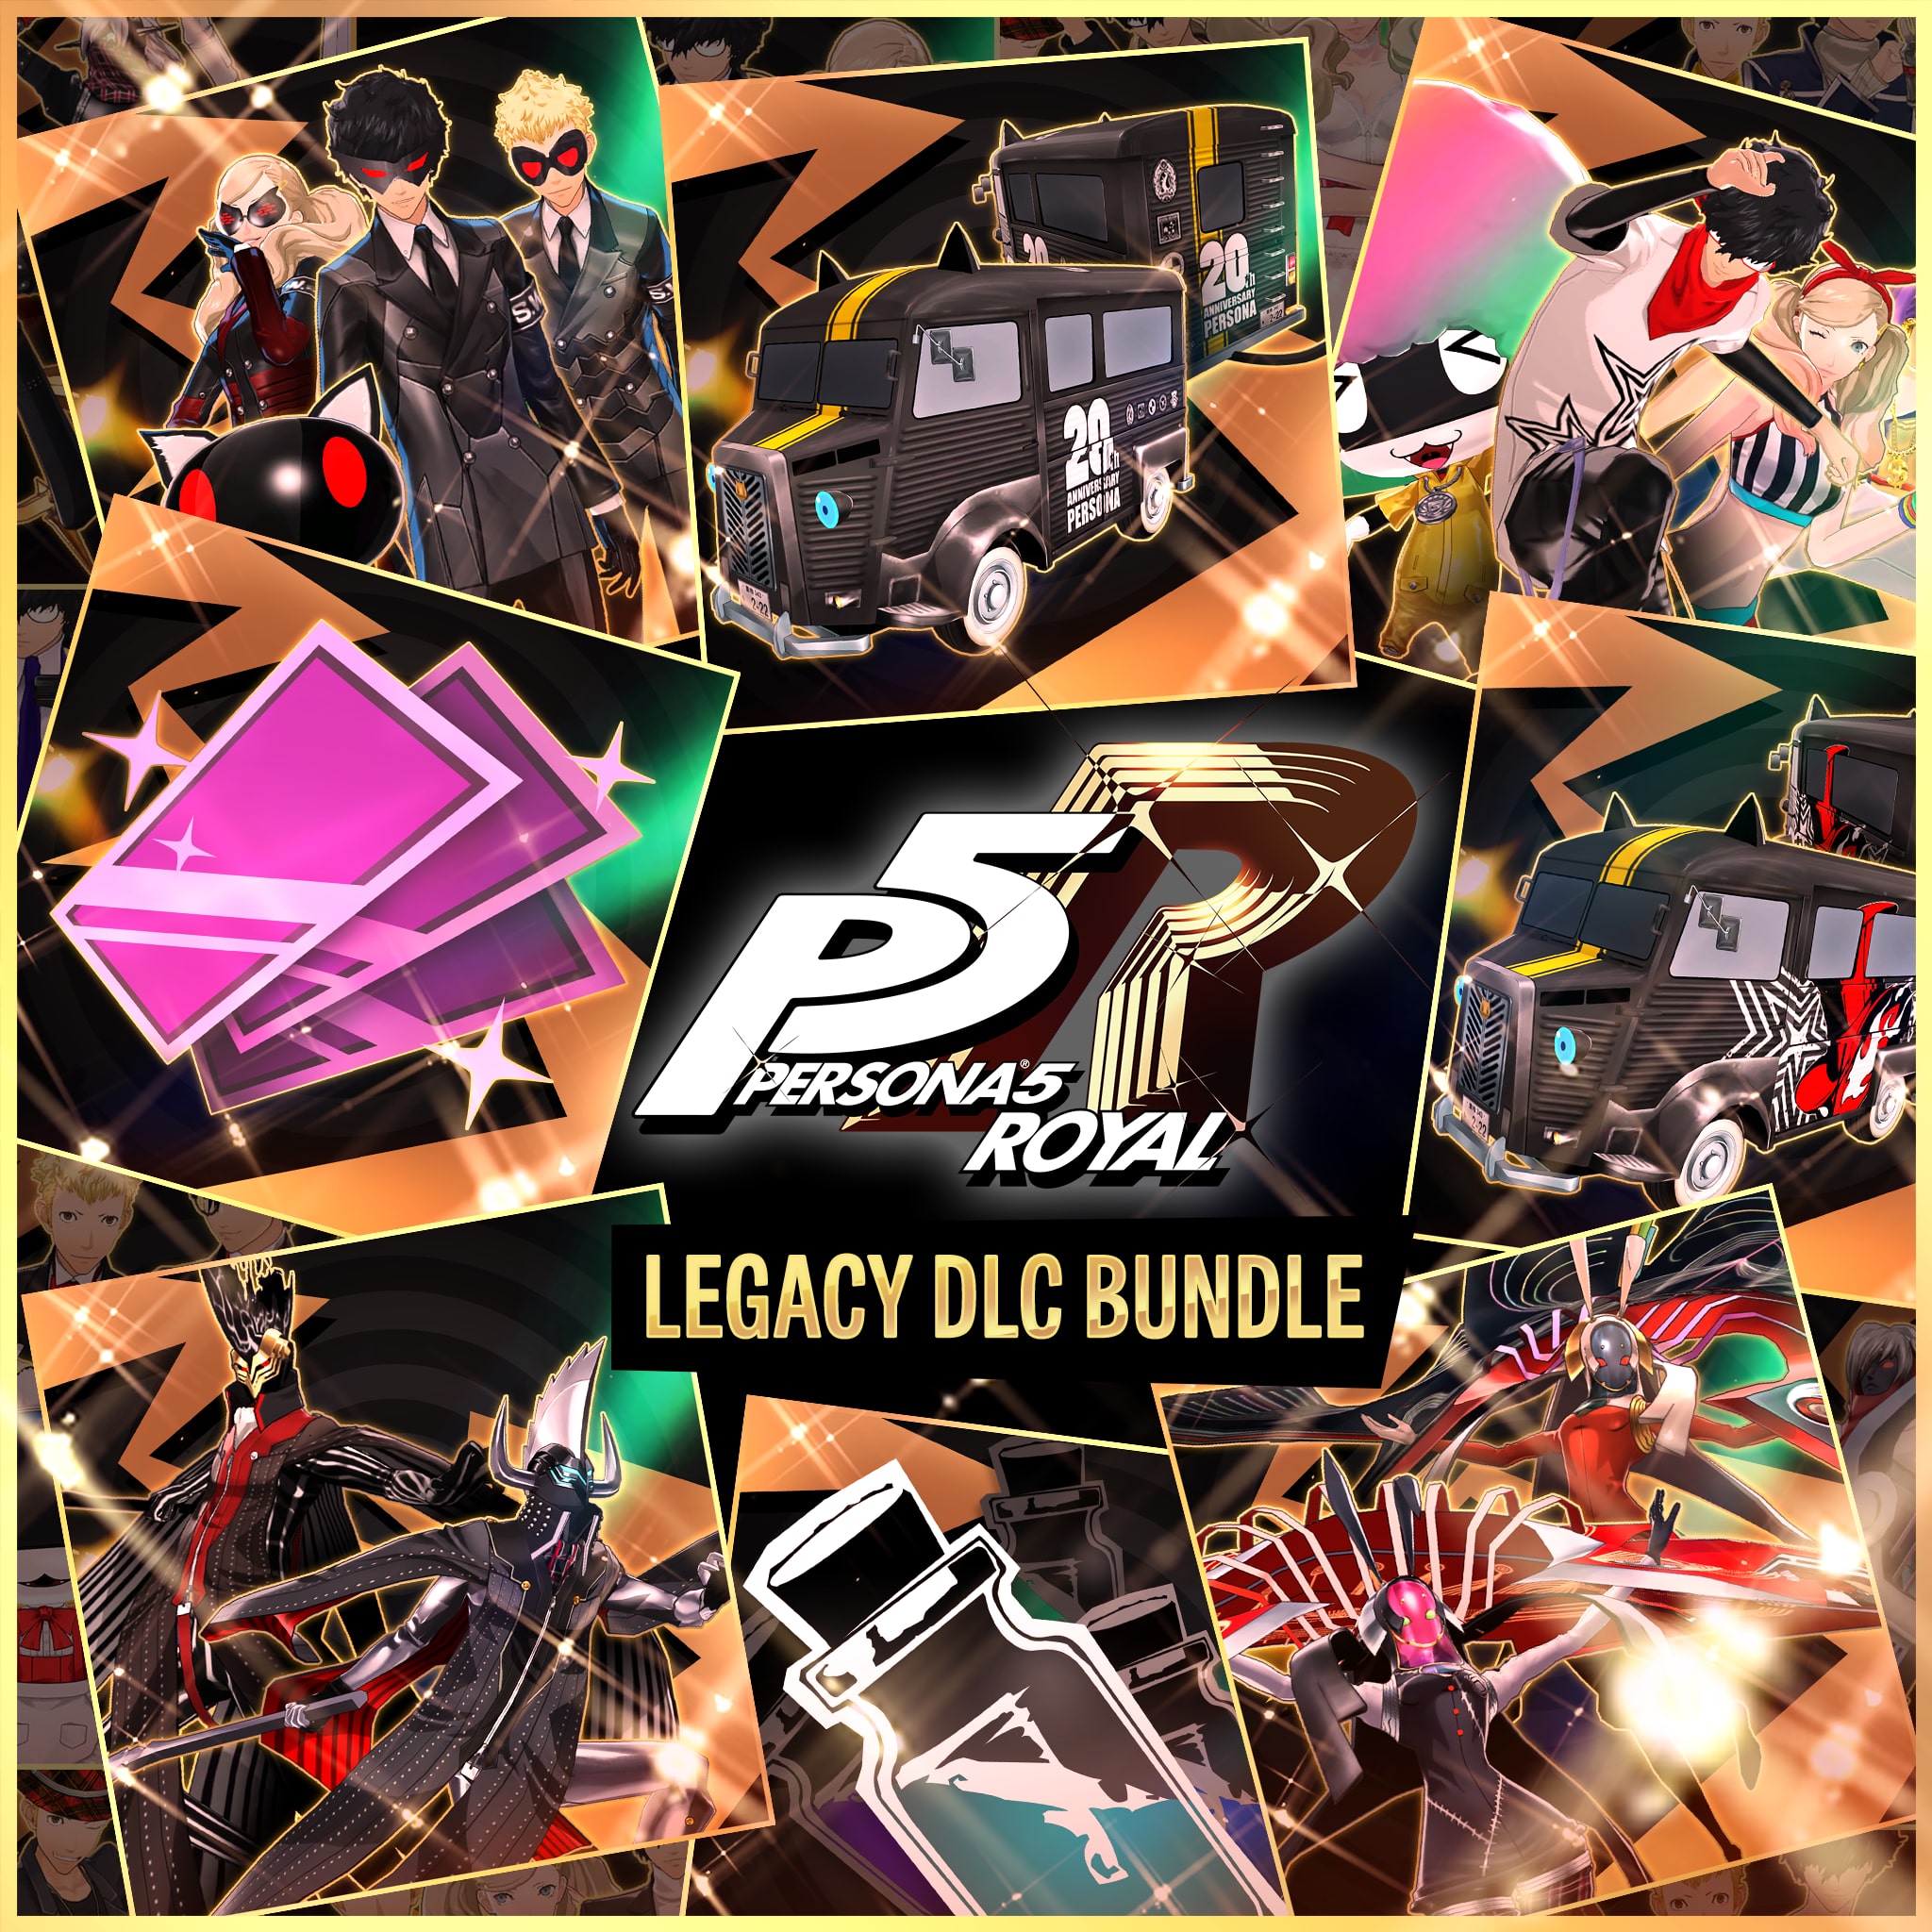 Persona®5 Royal Legacy DLC Bundle